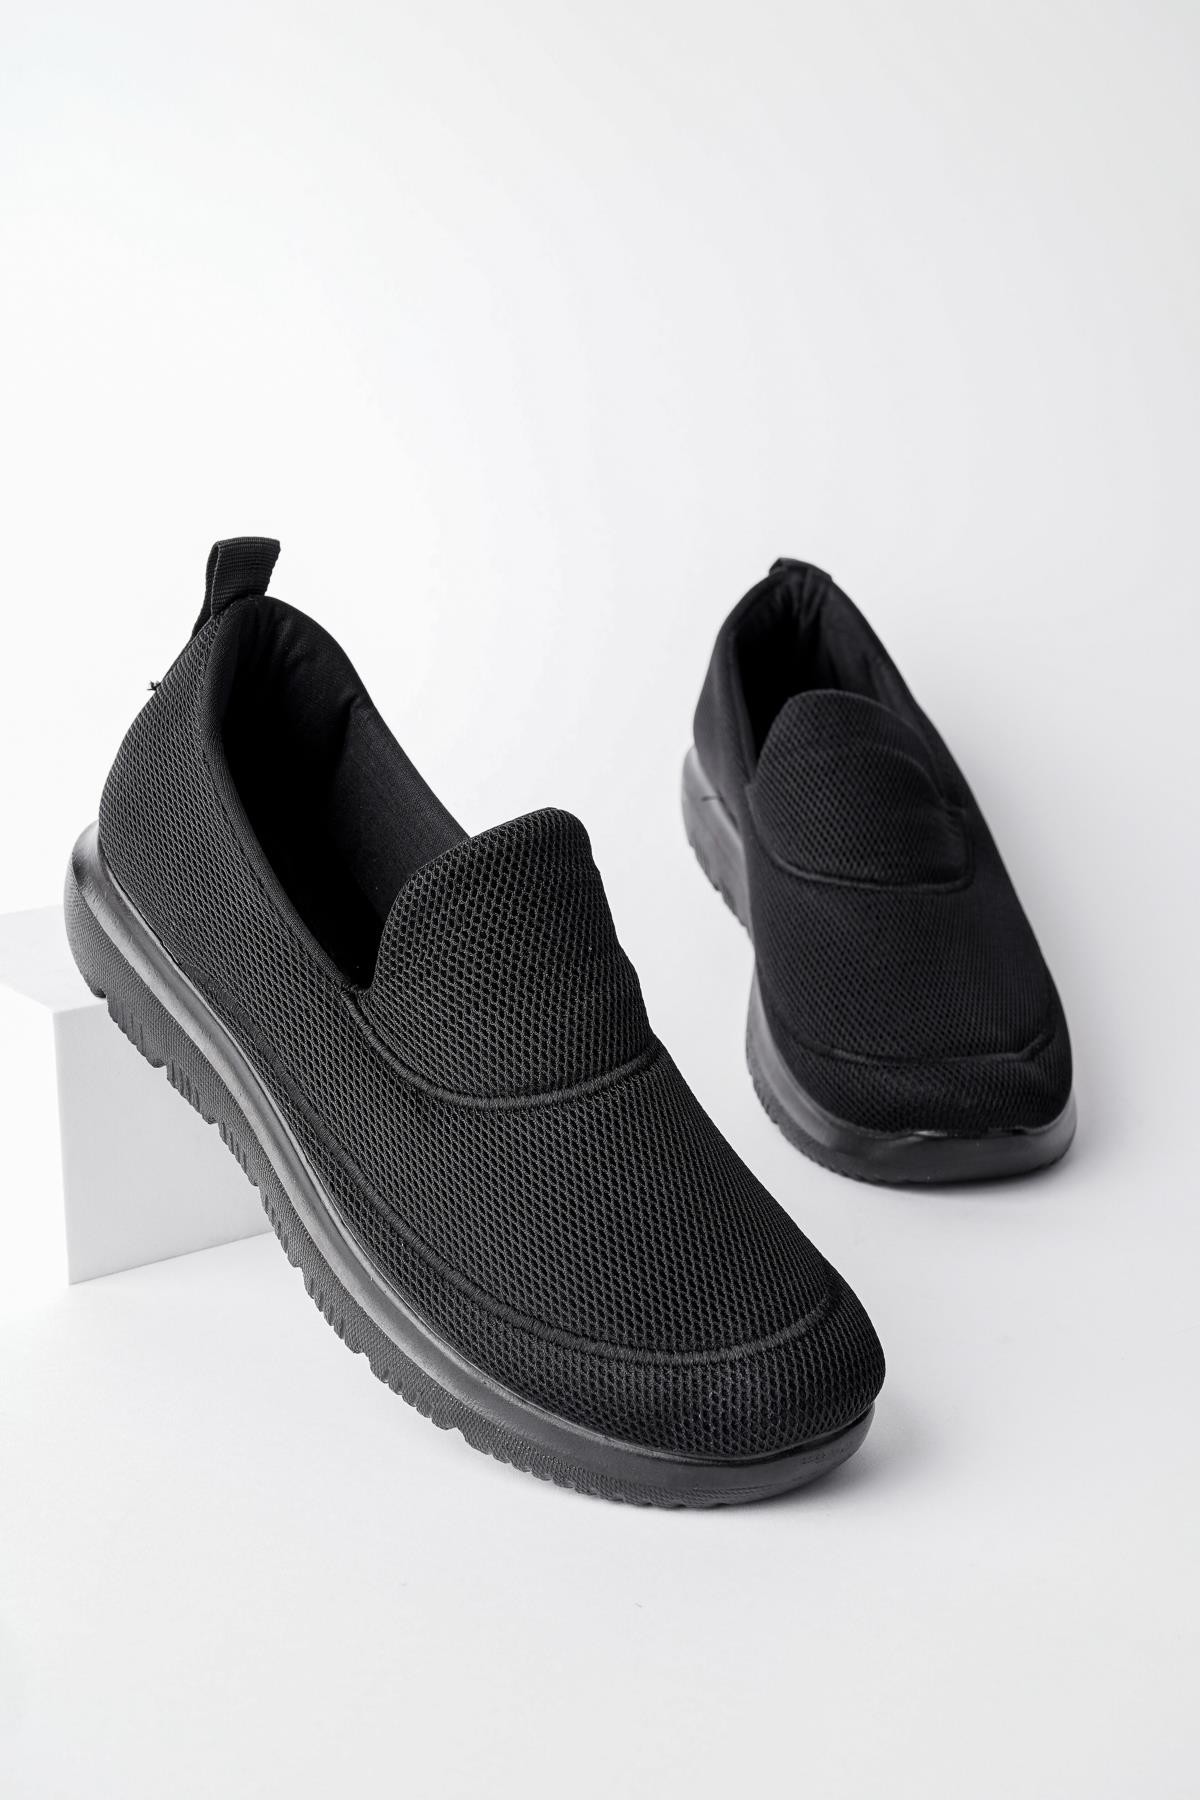 Muggo ZAC Garantili Erkek Ortopedik Bağcıksız Nefes Alabilen Hafif Yürüyüş Sneaker Spor Ayakkabı